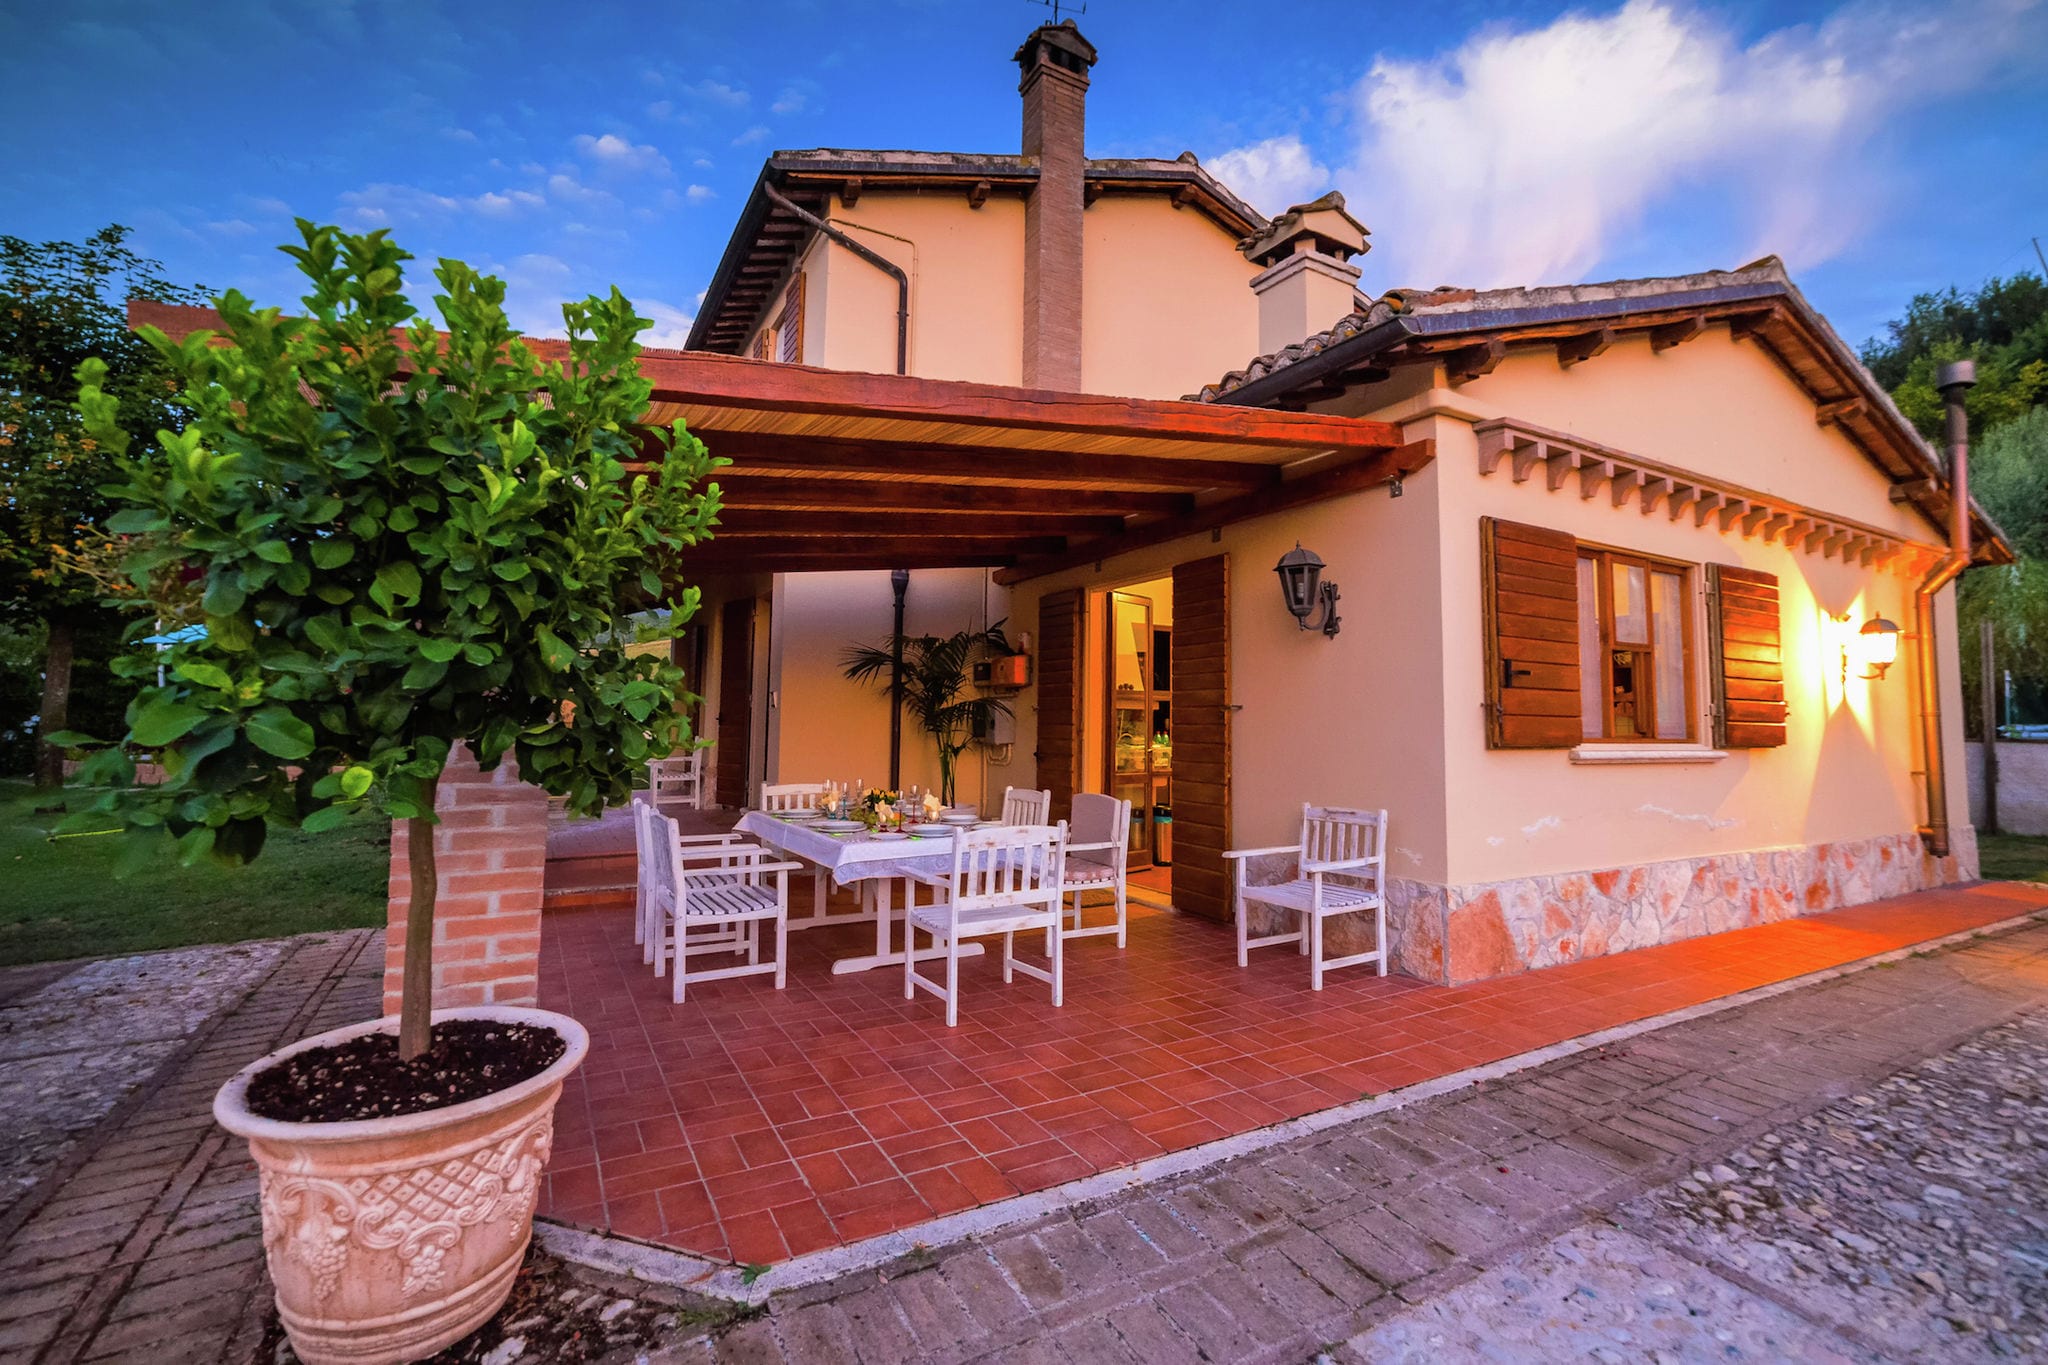 Gorgeous Villa near Spoleto with Swimming Pool